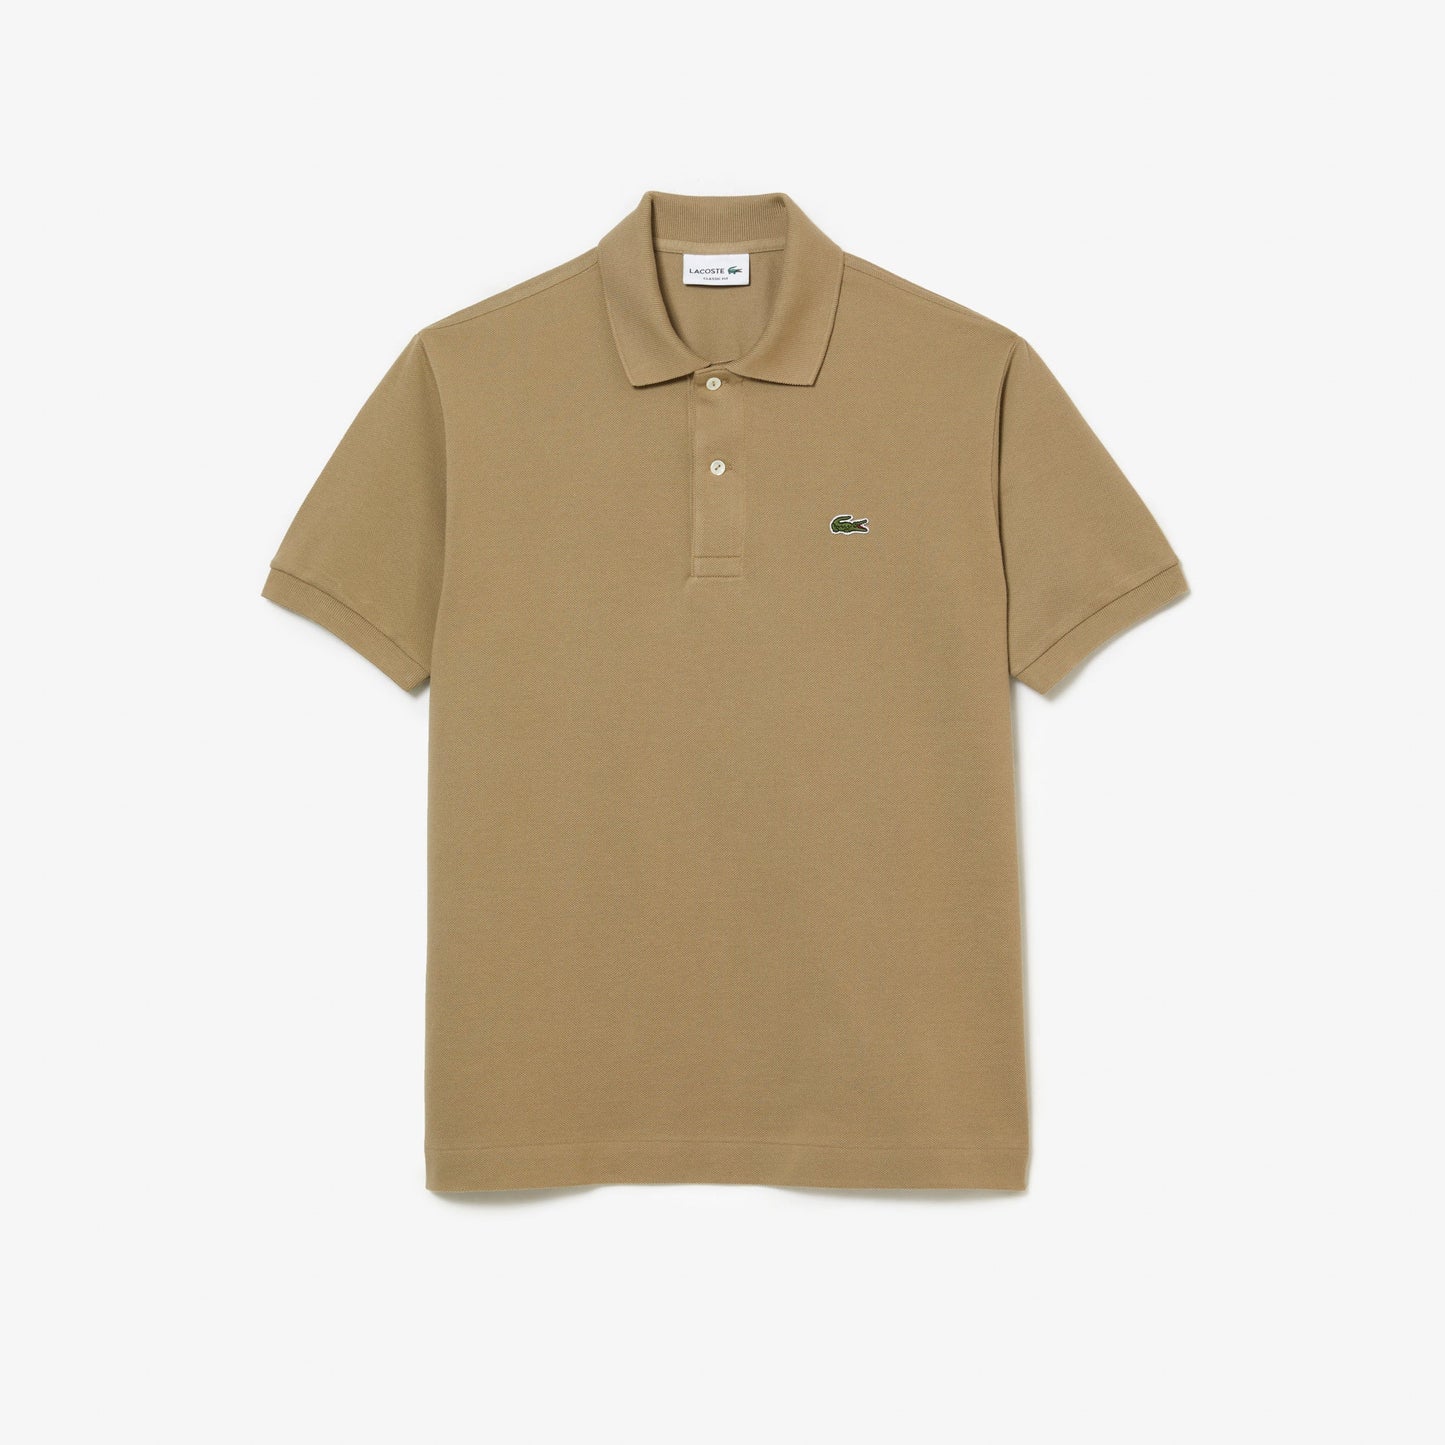 Original L.12.12 petit piqué cotton Polo Shirt - L1212